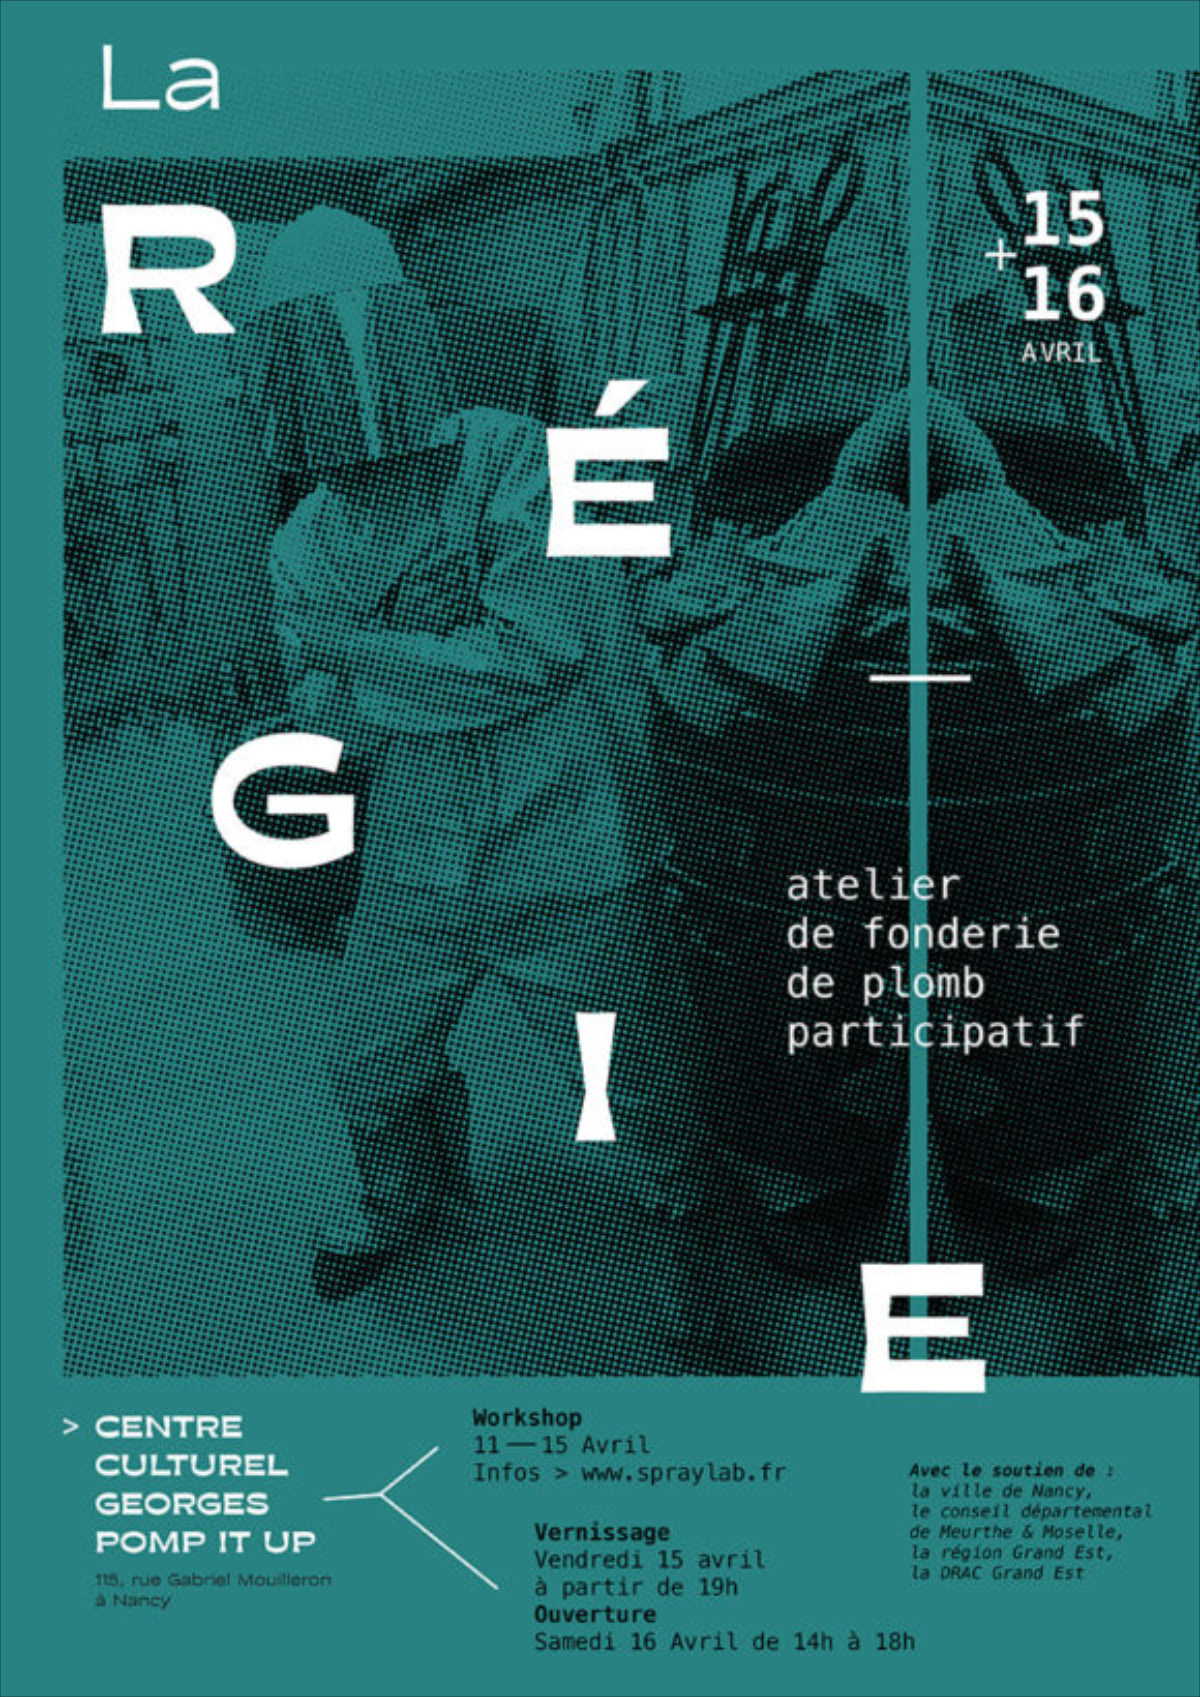 La Régie, atelier participatif de fonderie par Edouard Jattiot